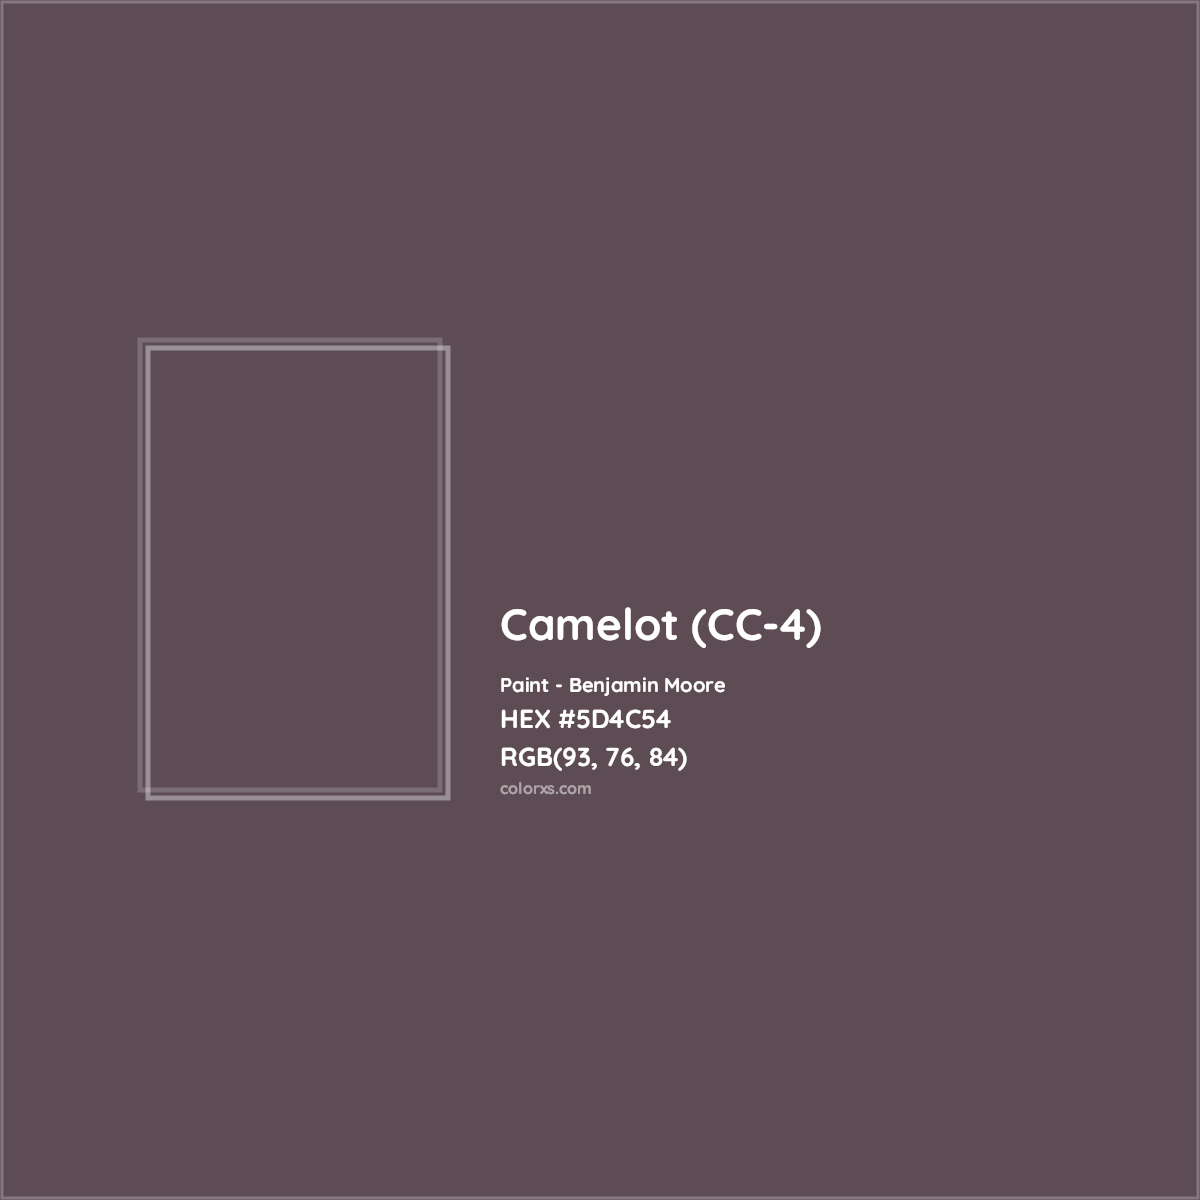 HEX #5D4C54 Camelot (CC-4) Paint Benjamin Moore - Color Code